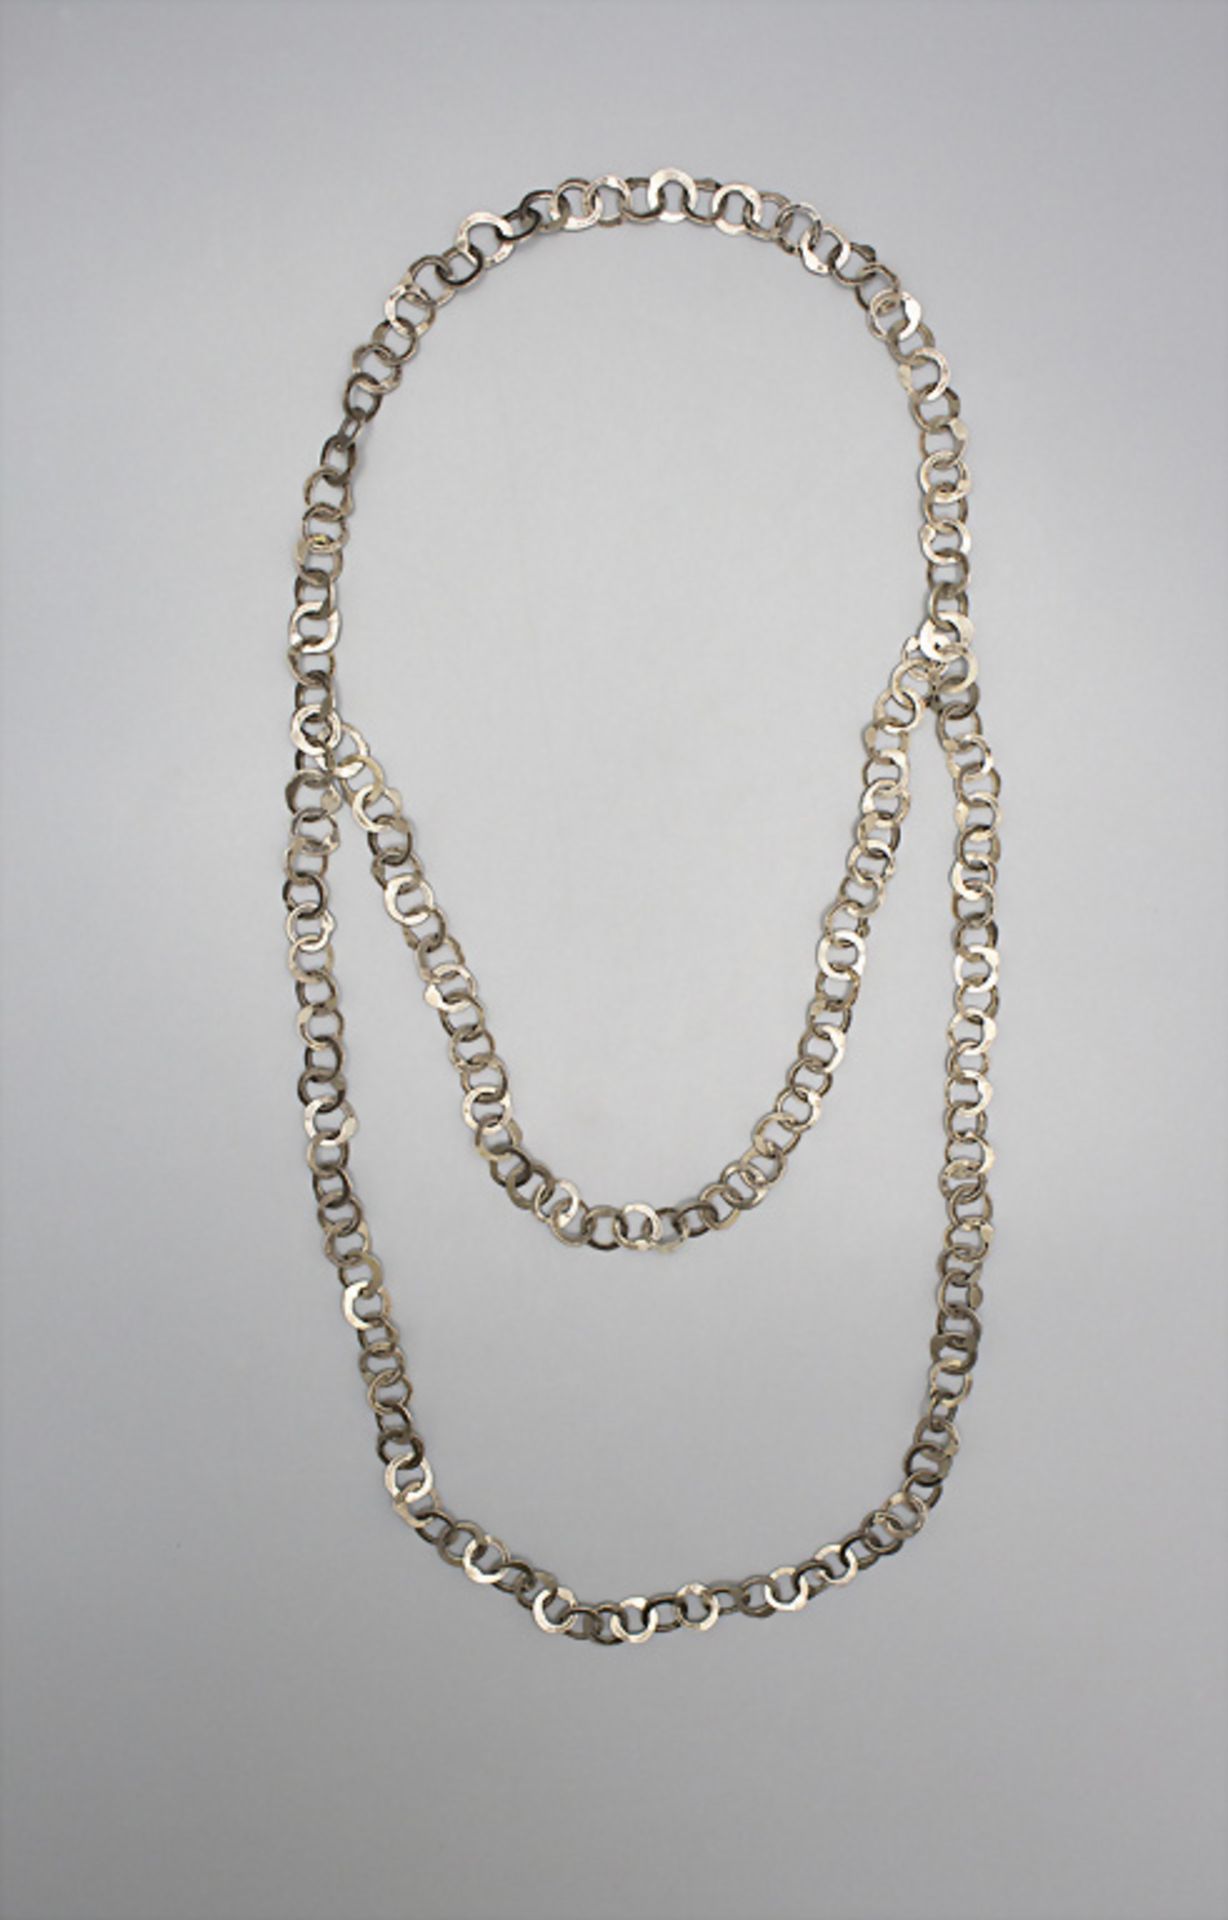 Vintage Silberkette / A vintage silver necklace, wohl 1970er Jahre - Bild 2 aus 3